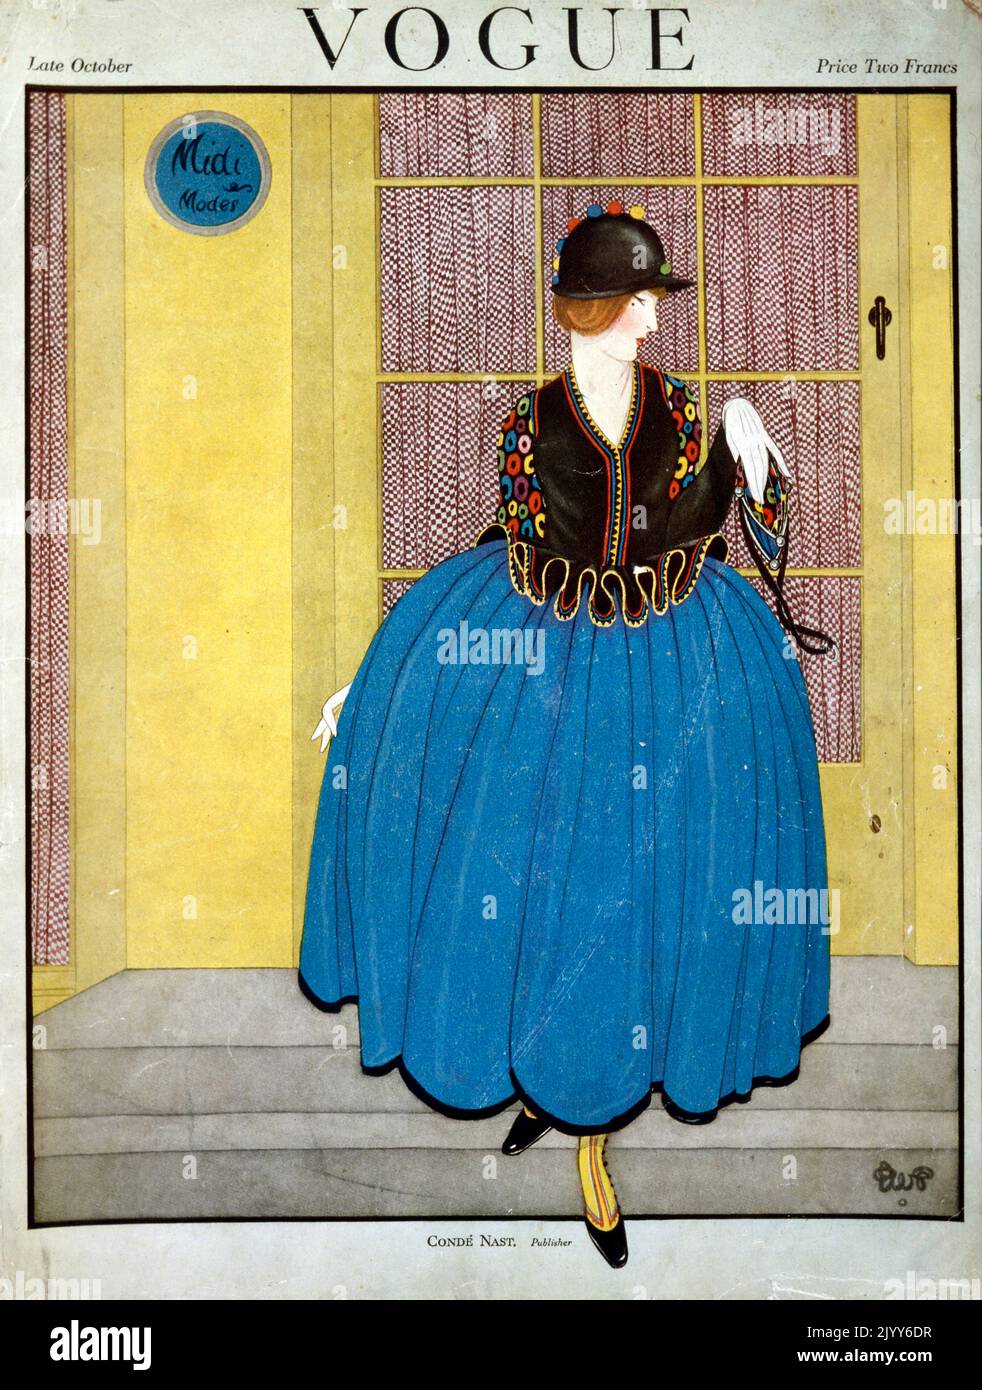 Frontcover des Magazins Vogue; Ende Oktober; herausgegeben von Cond Nast and Co., London; eine Dame trägt einen blauen Rock mit Pufffarbe an einer gelben Tür. Stockfoto